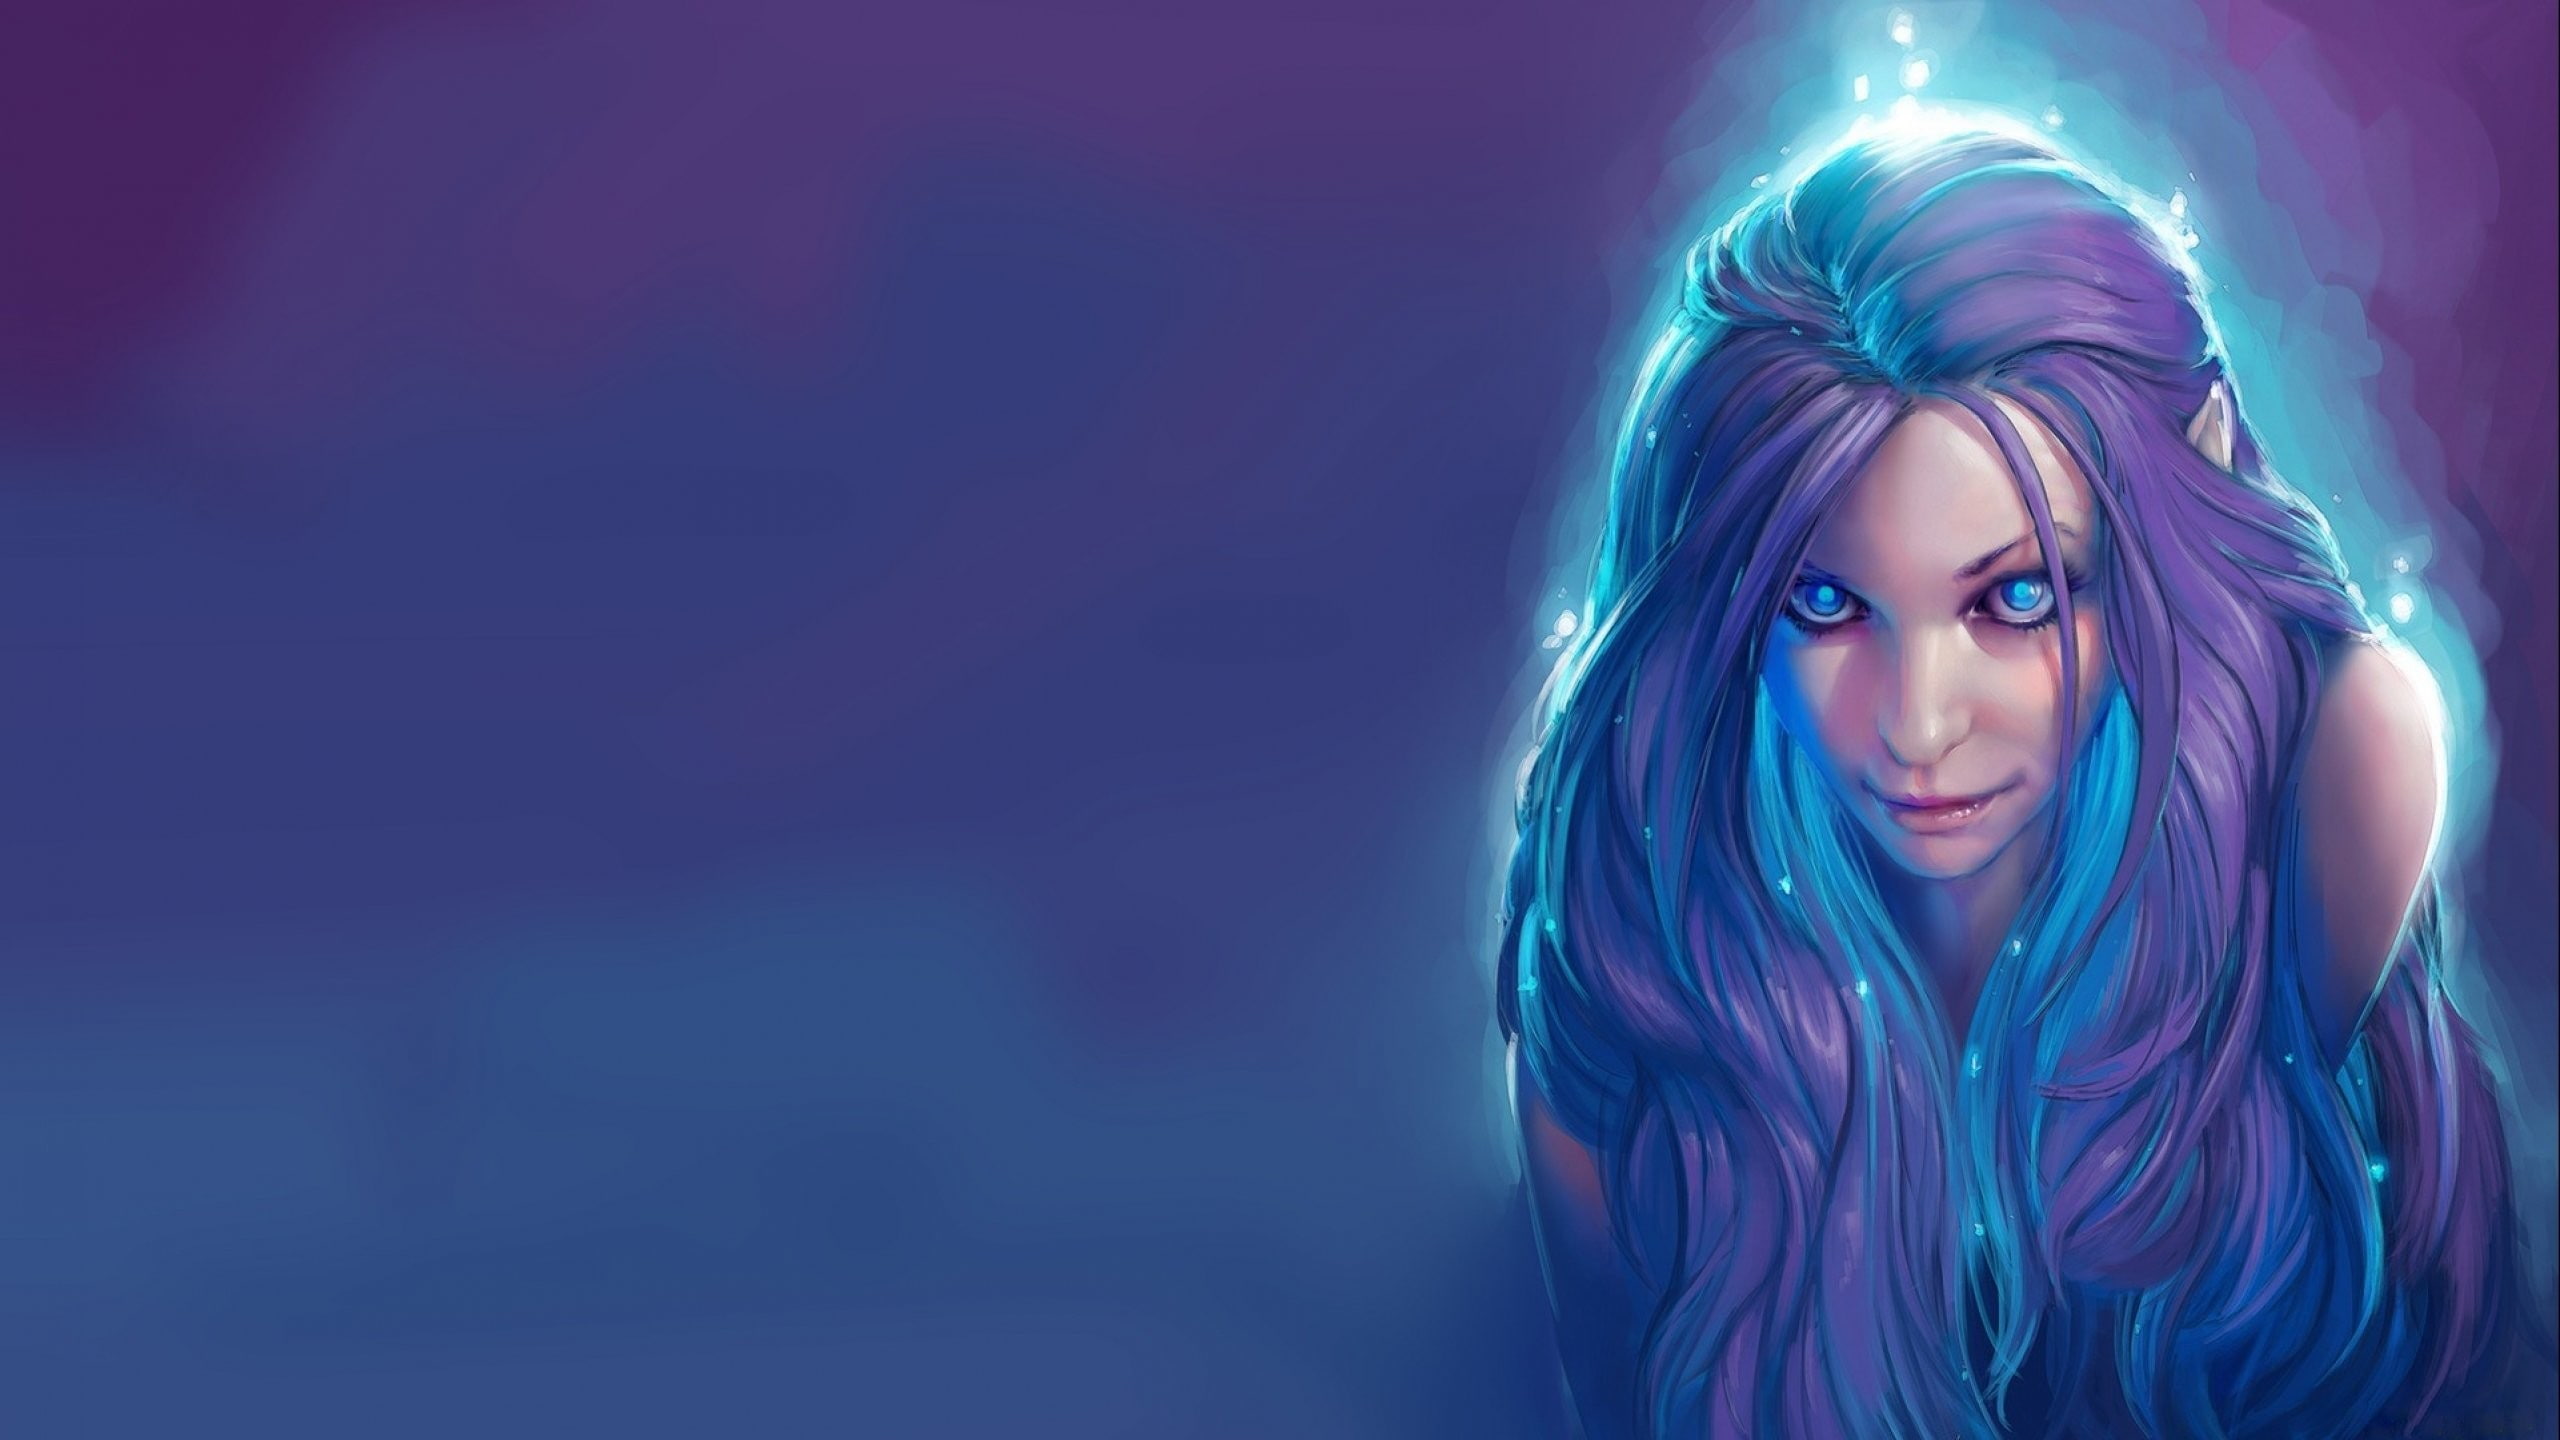 women, blue hair, elves, fantasy art, artwork